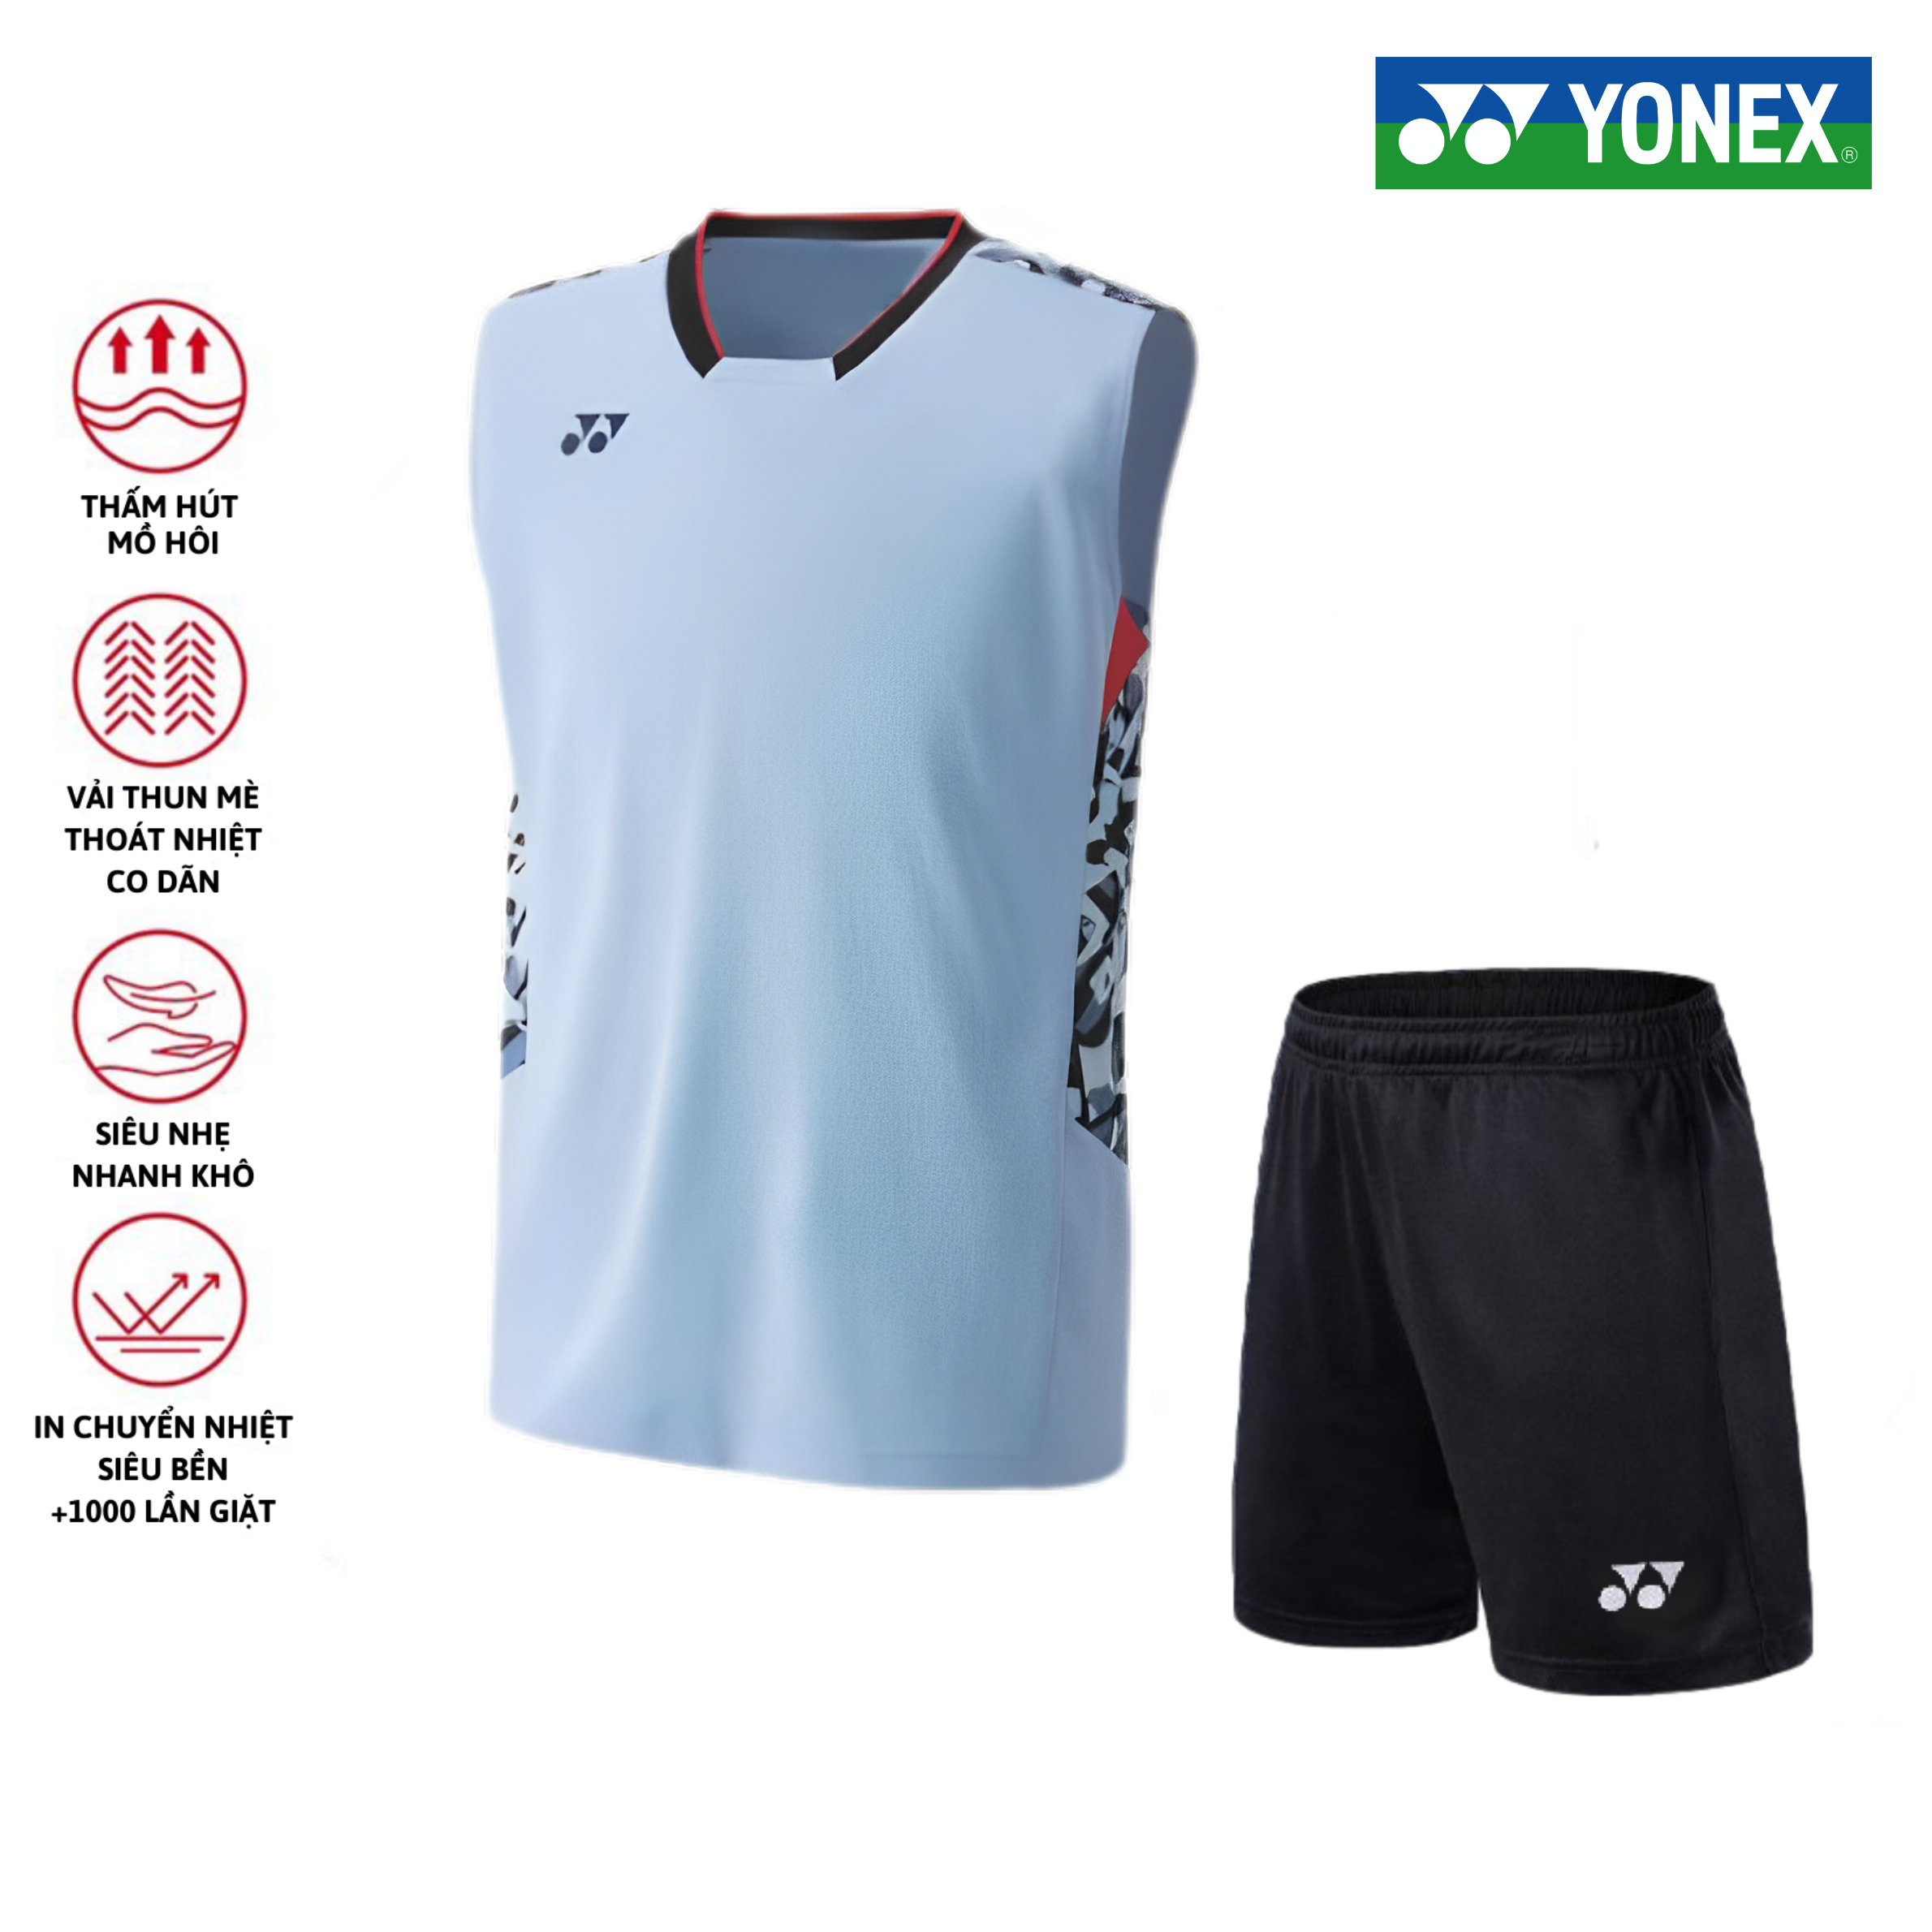 Áo cầu lông, quần cầu lông Yonex chuyên nghiệp mới nhất sử dụng tập luyện và thi đấu cầu lông A336